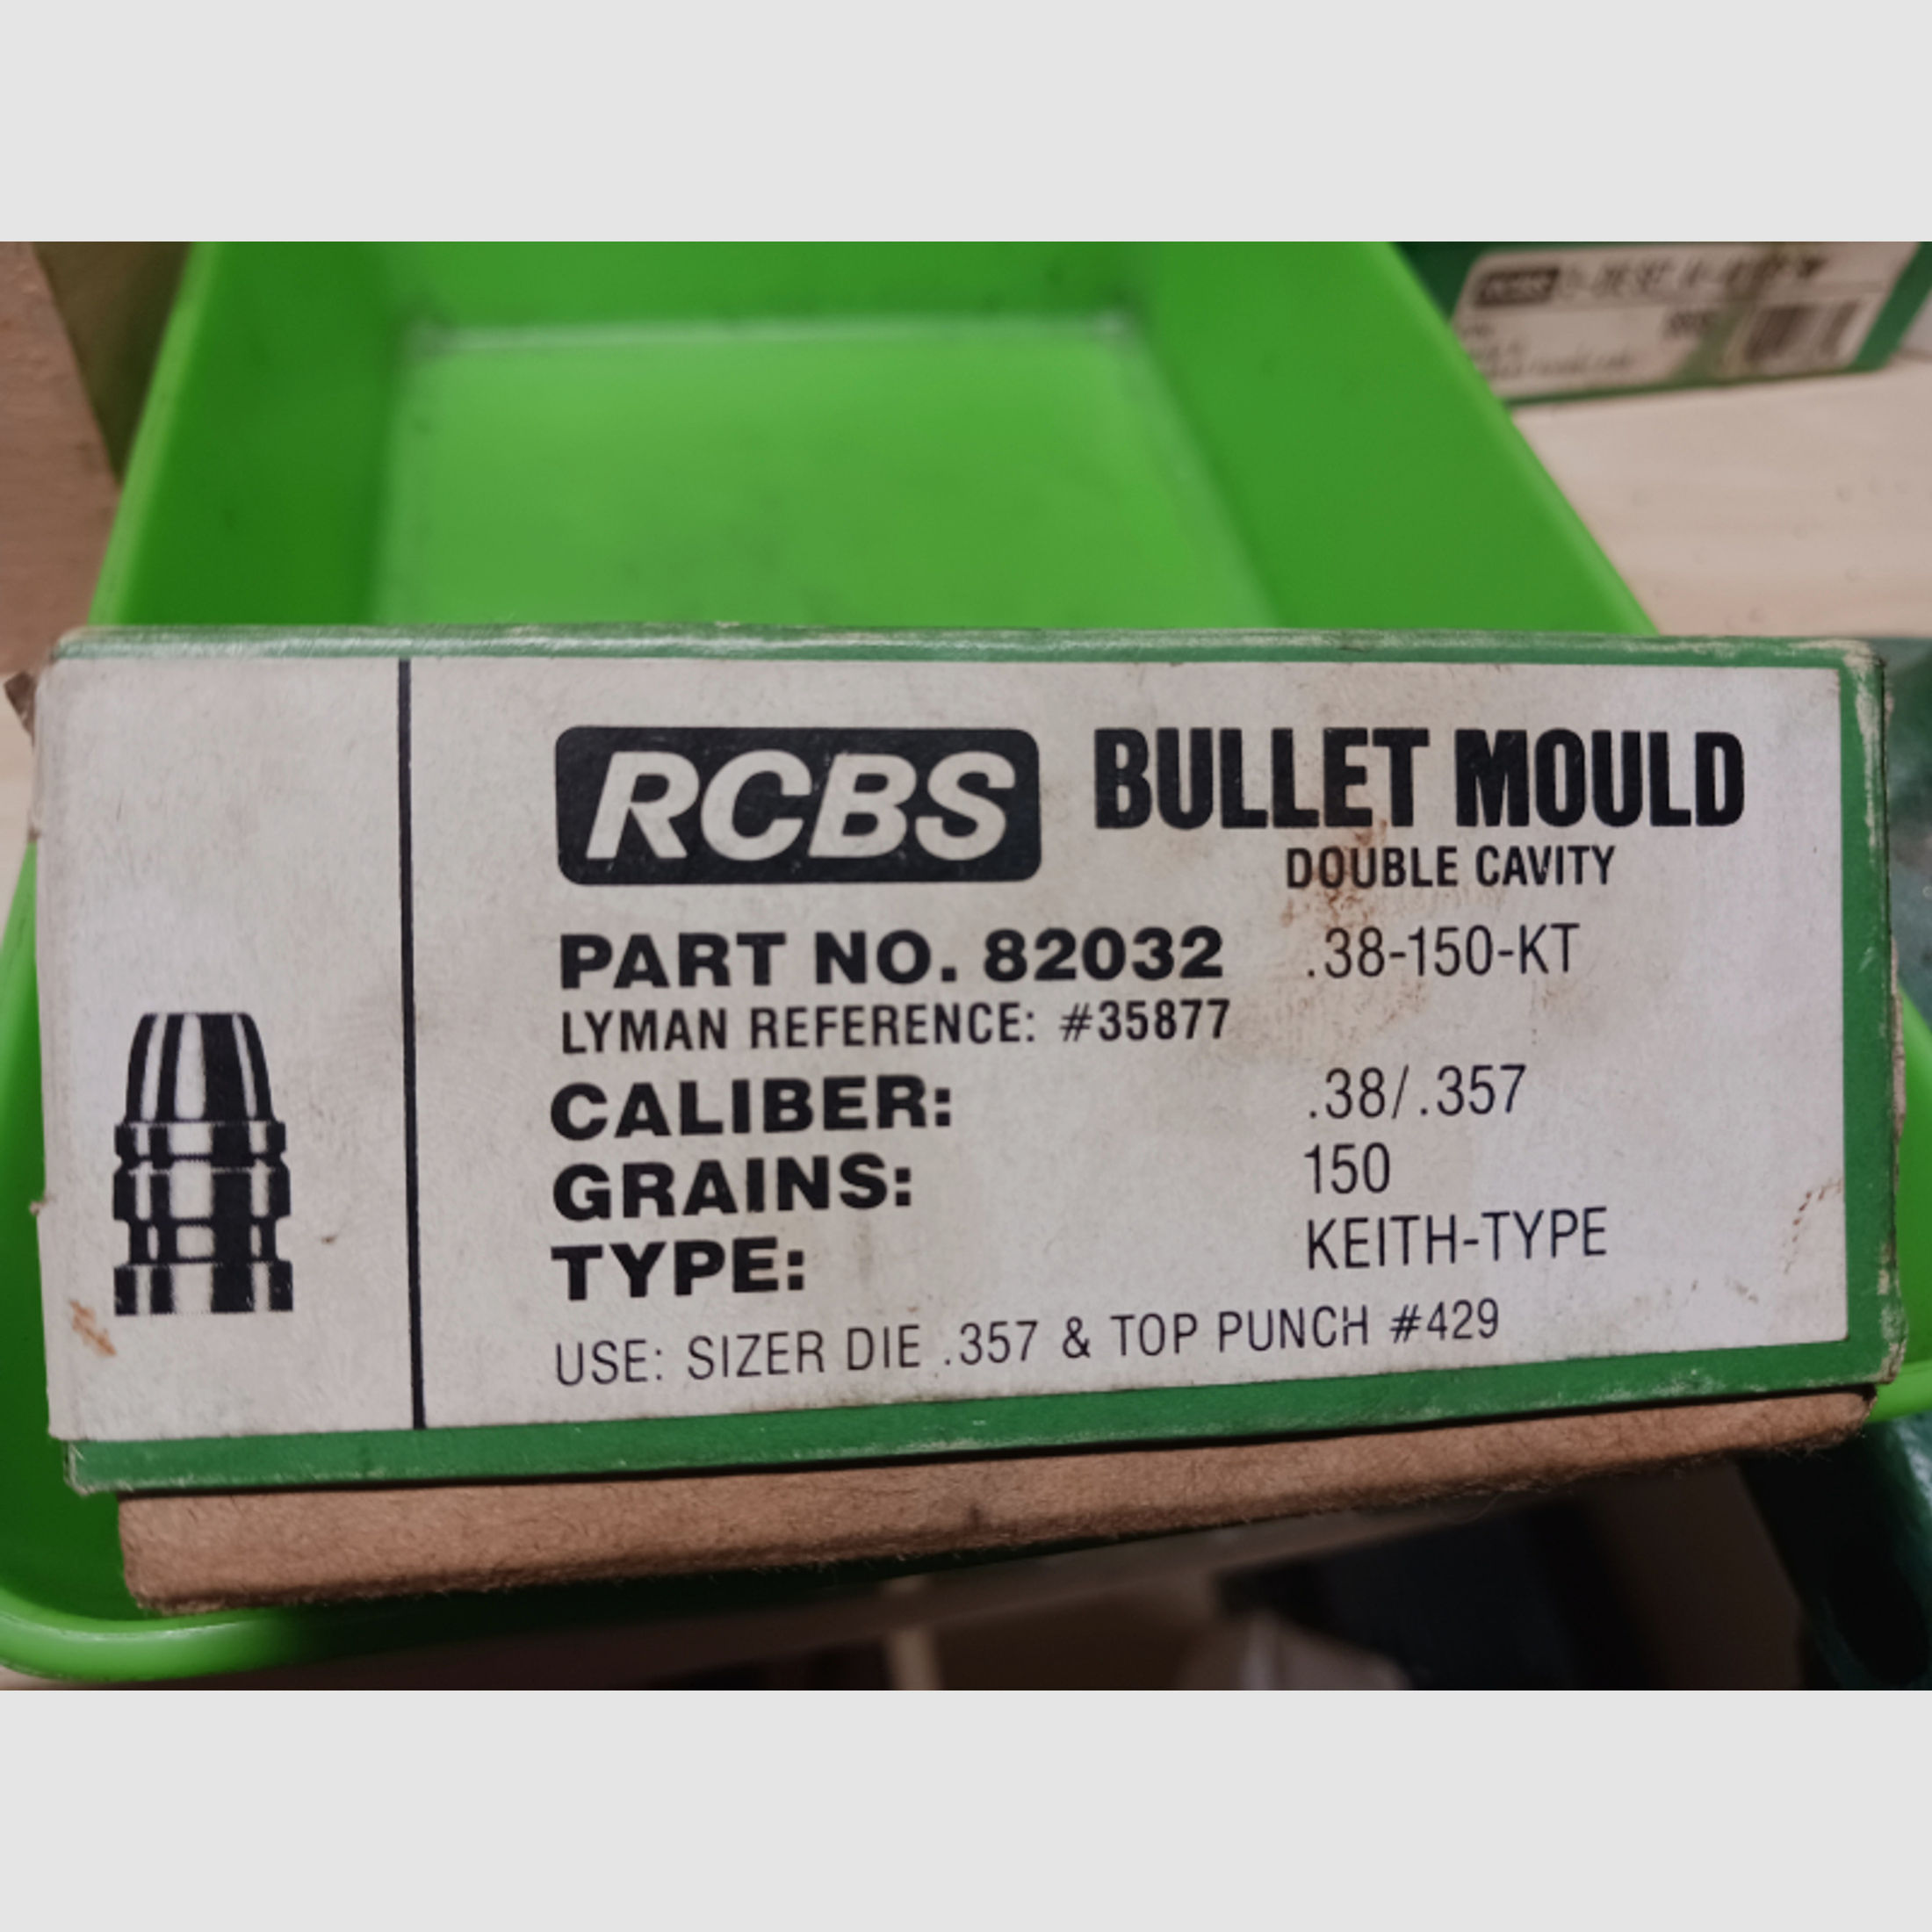 Kokille von RCBS für .357, 150 Grain